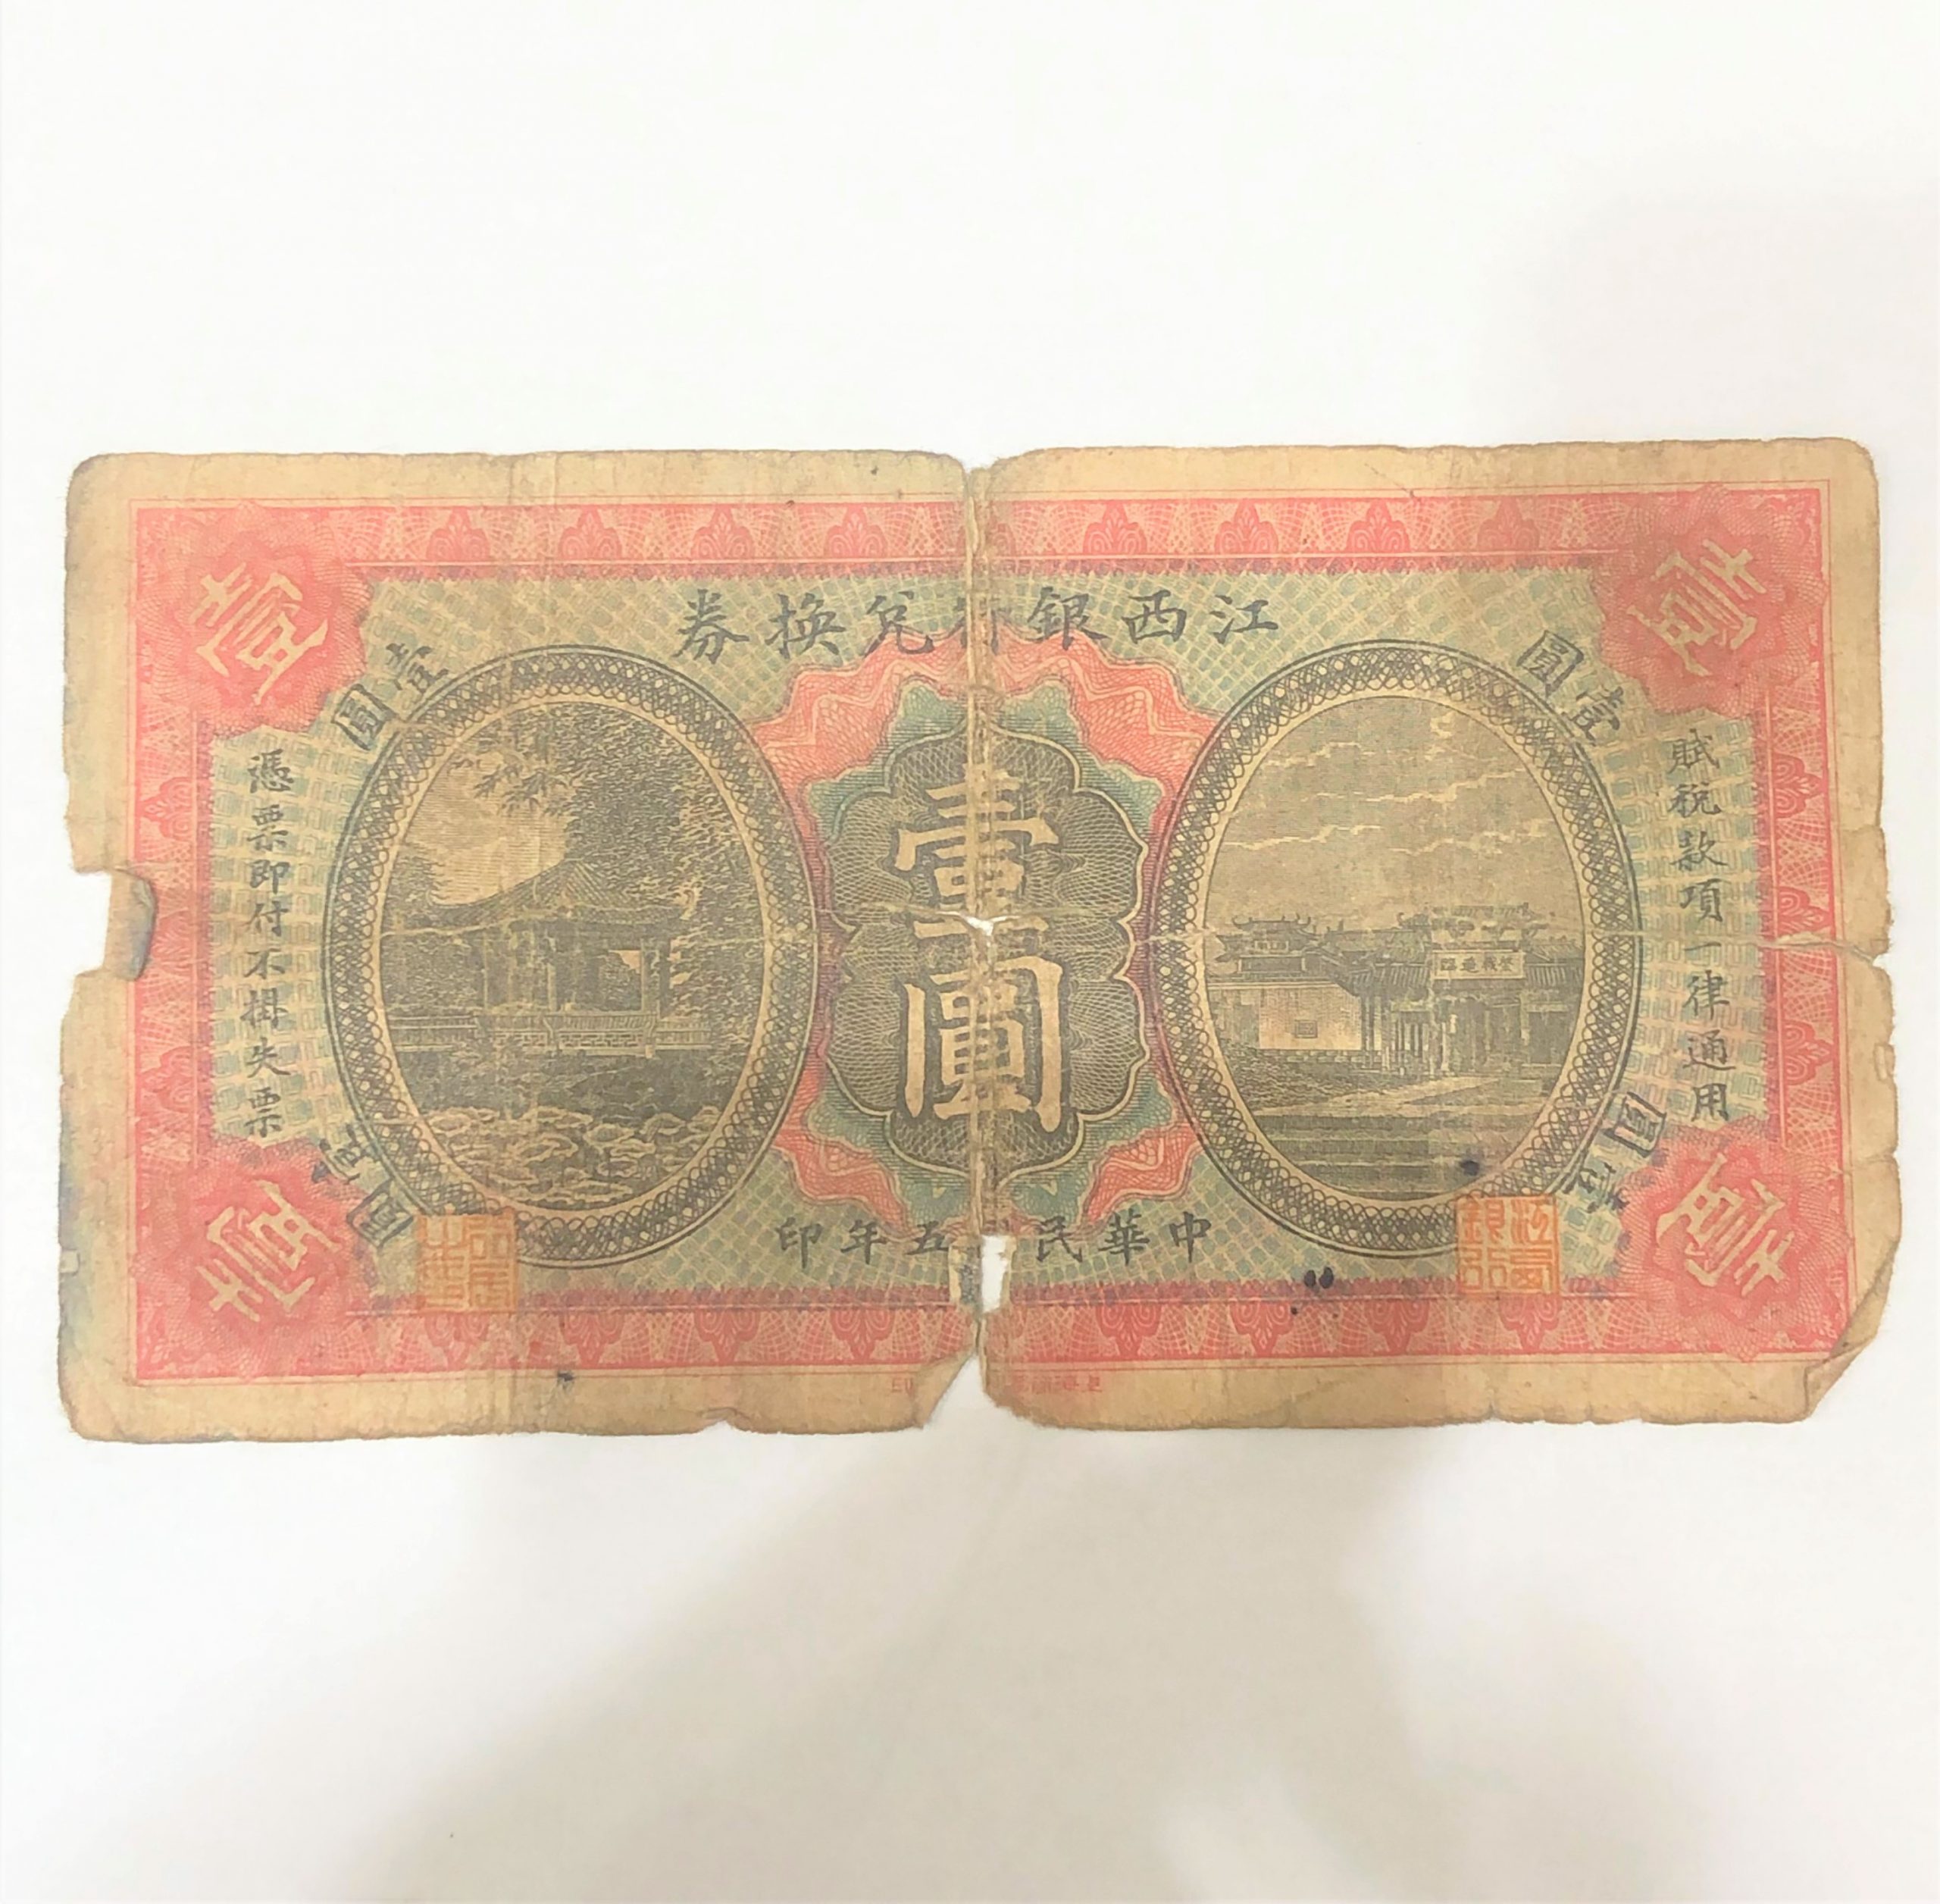 江西銀行兌換券 壹圓 中国古紙幣